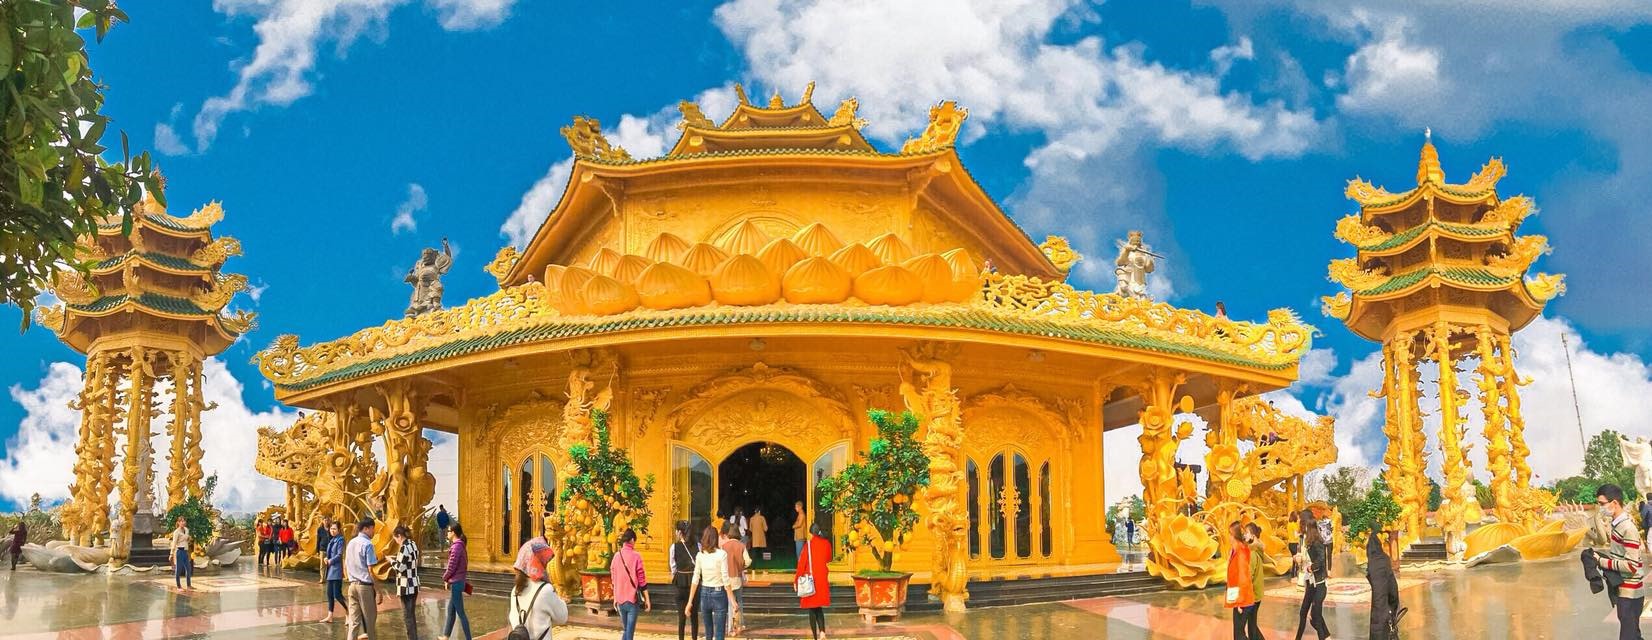 5 ngôi chùa ở Hưng Yên hút khách dịp năm mới